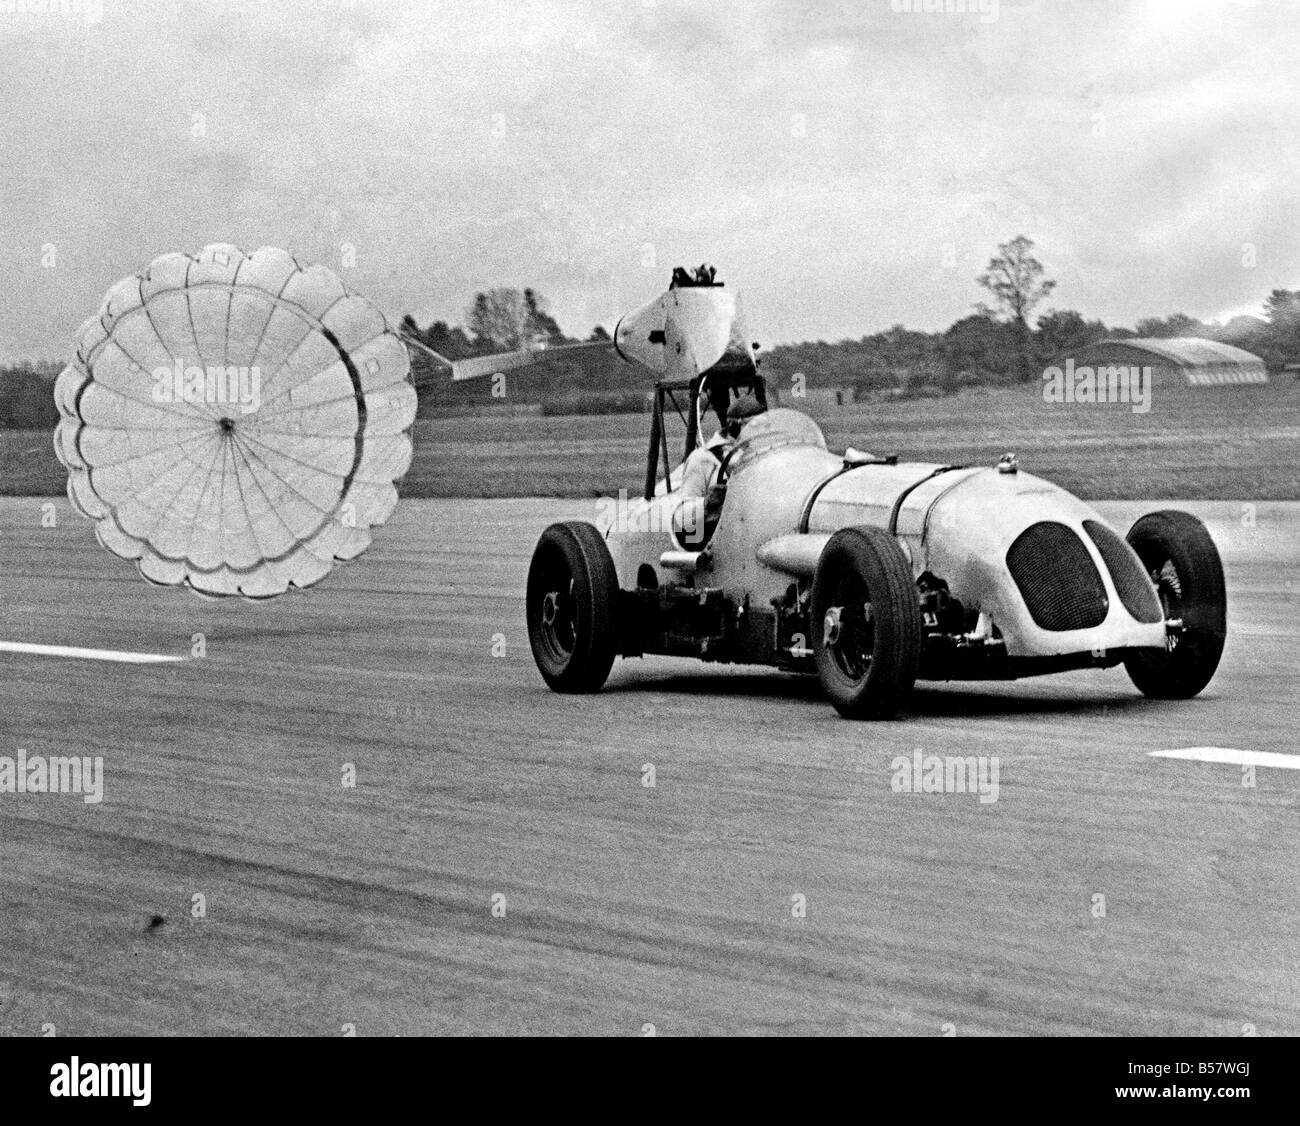 Eine Demonstration der G.Q. versenkbare Flugzeuge Bremse Fallschirm fand heute im Dunsfold Aerodrome, und das Testfahrzeug eingesetzt war ein Rennwagen, der im Jahre 1933 seine ersten Rundenrekord in Brooklands einrichten. ; Mai 1954; P004672 Stockfoto